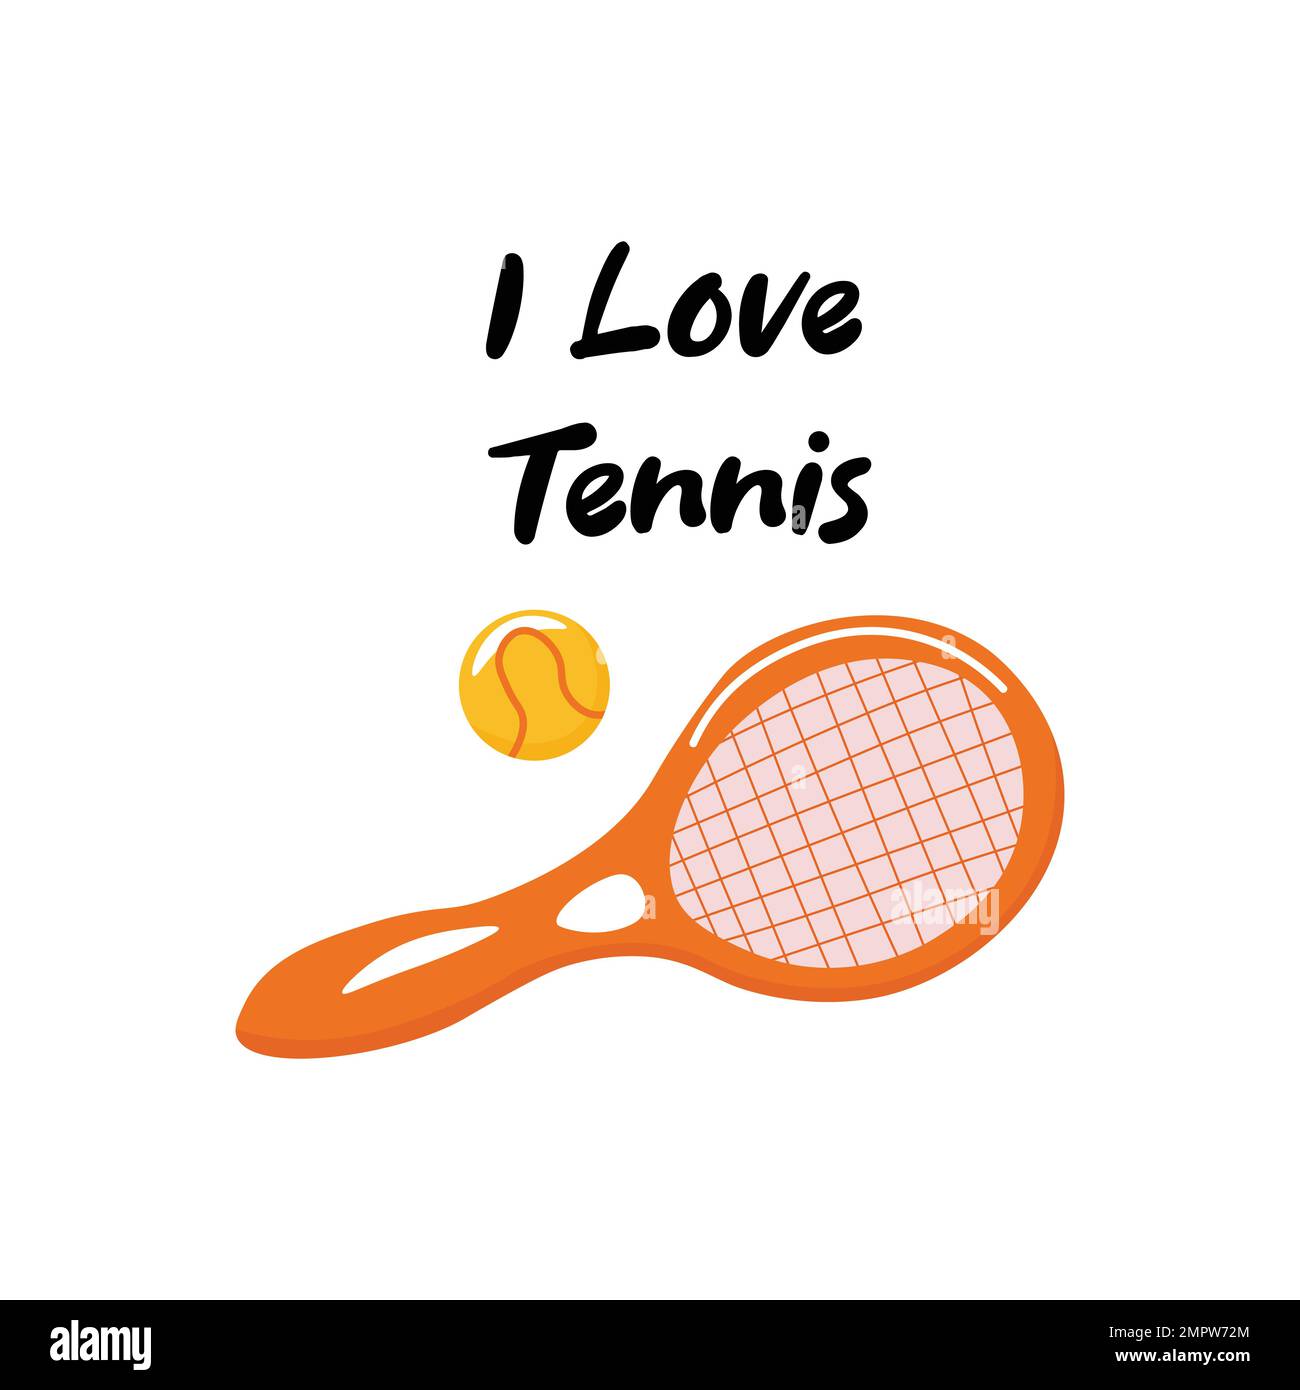 Love tennis Banque d'images détourées - Alamy